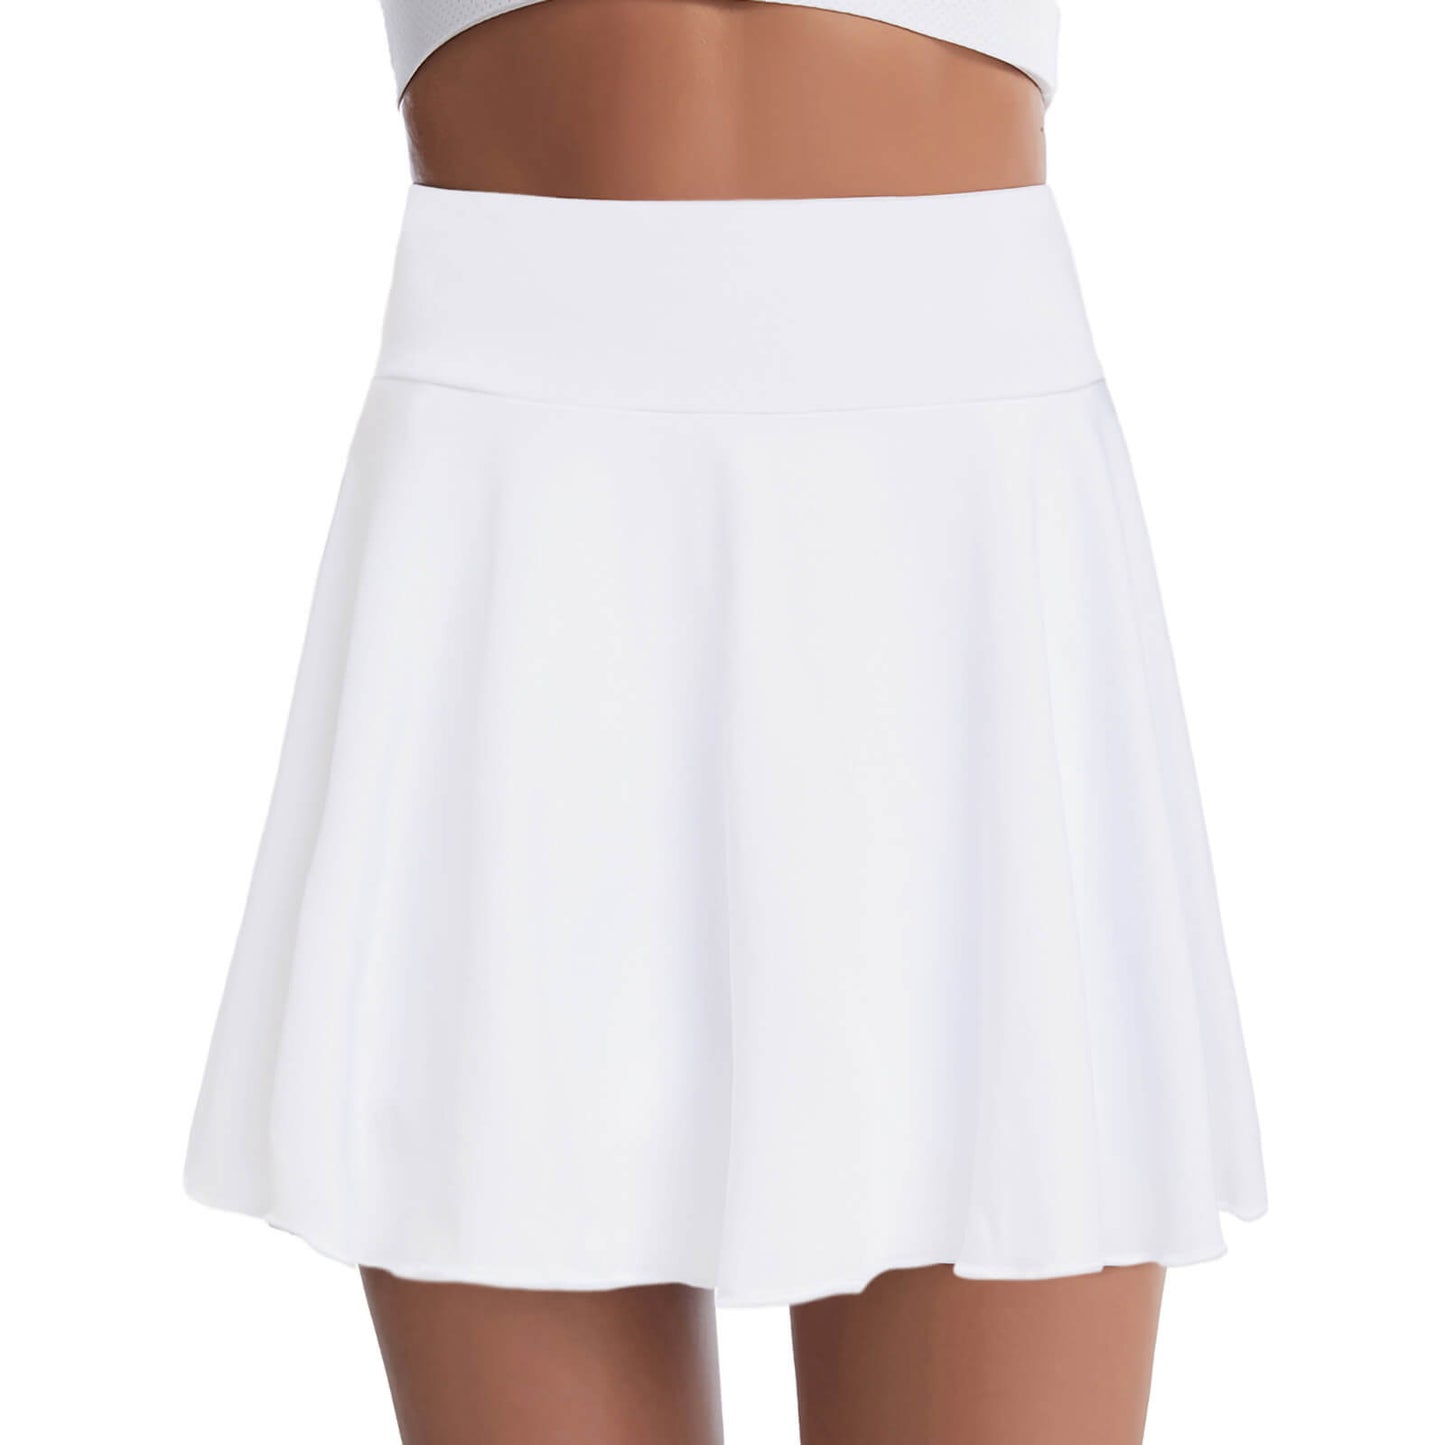 White Tennis Short Skirts for Girls